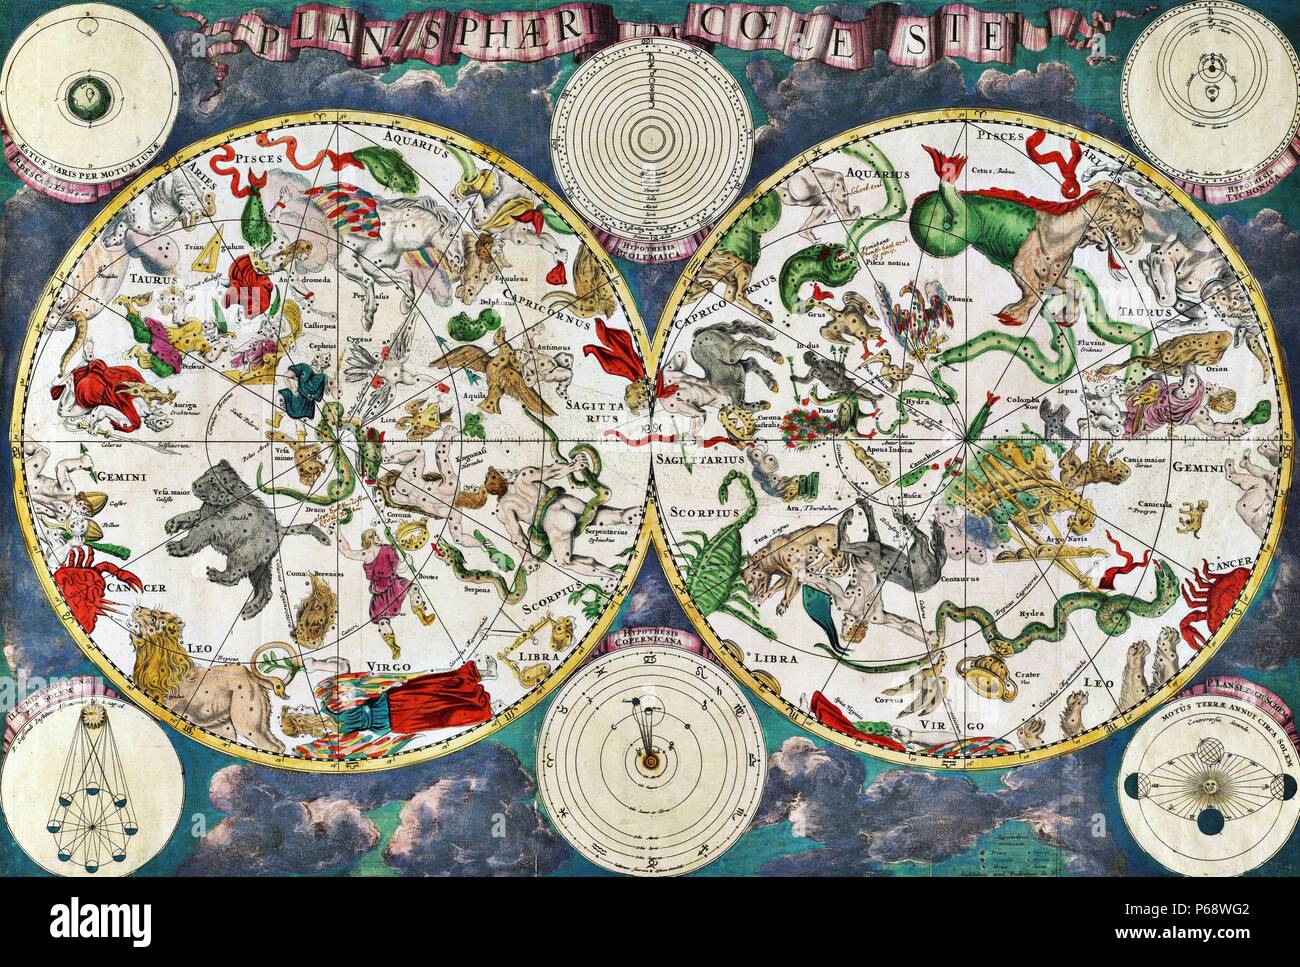 Mappa celeste del XVII secolo, dal cartografo olandese Frederik de Wit. I gruppi di stelle e astrologiche e segni zodiacali sono mostrati Foto Stock